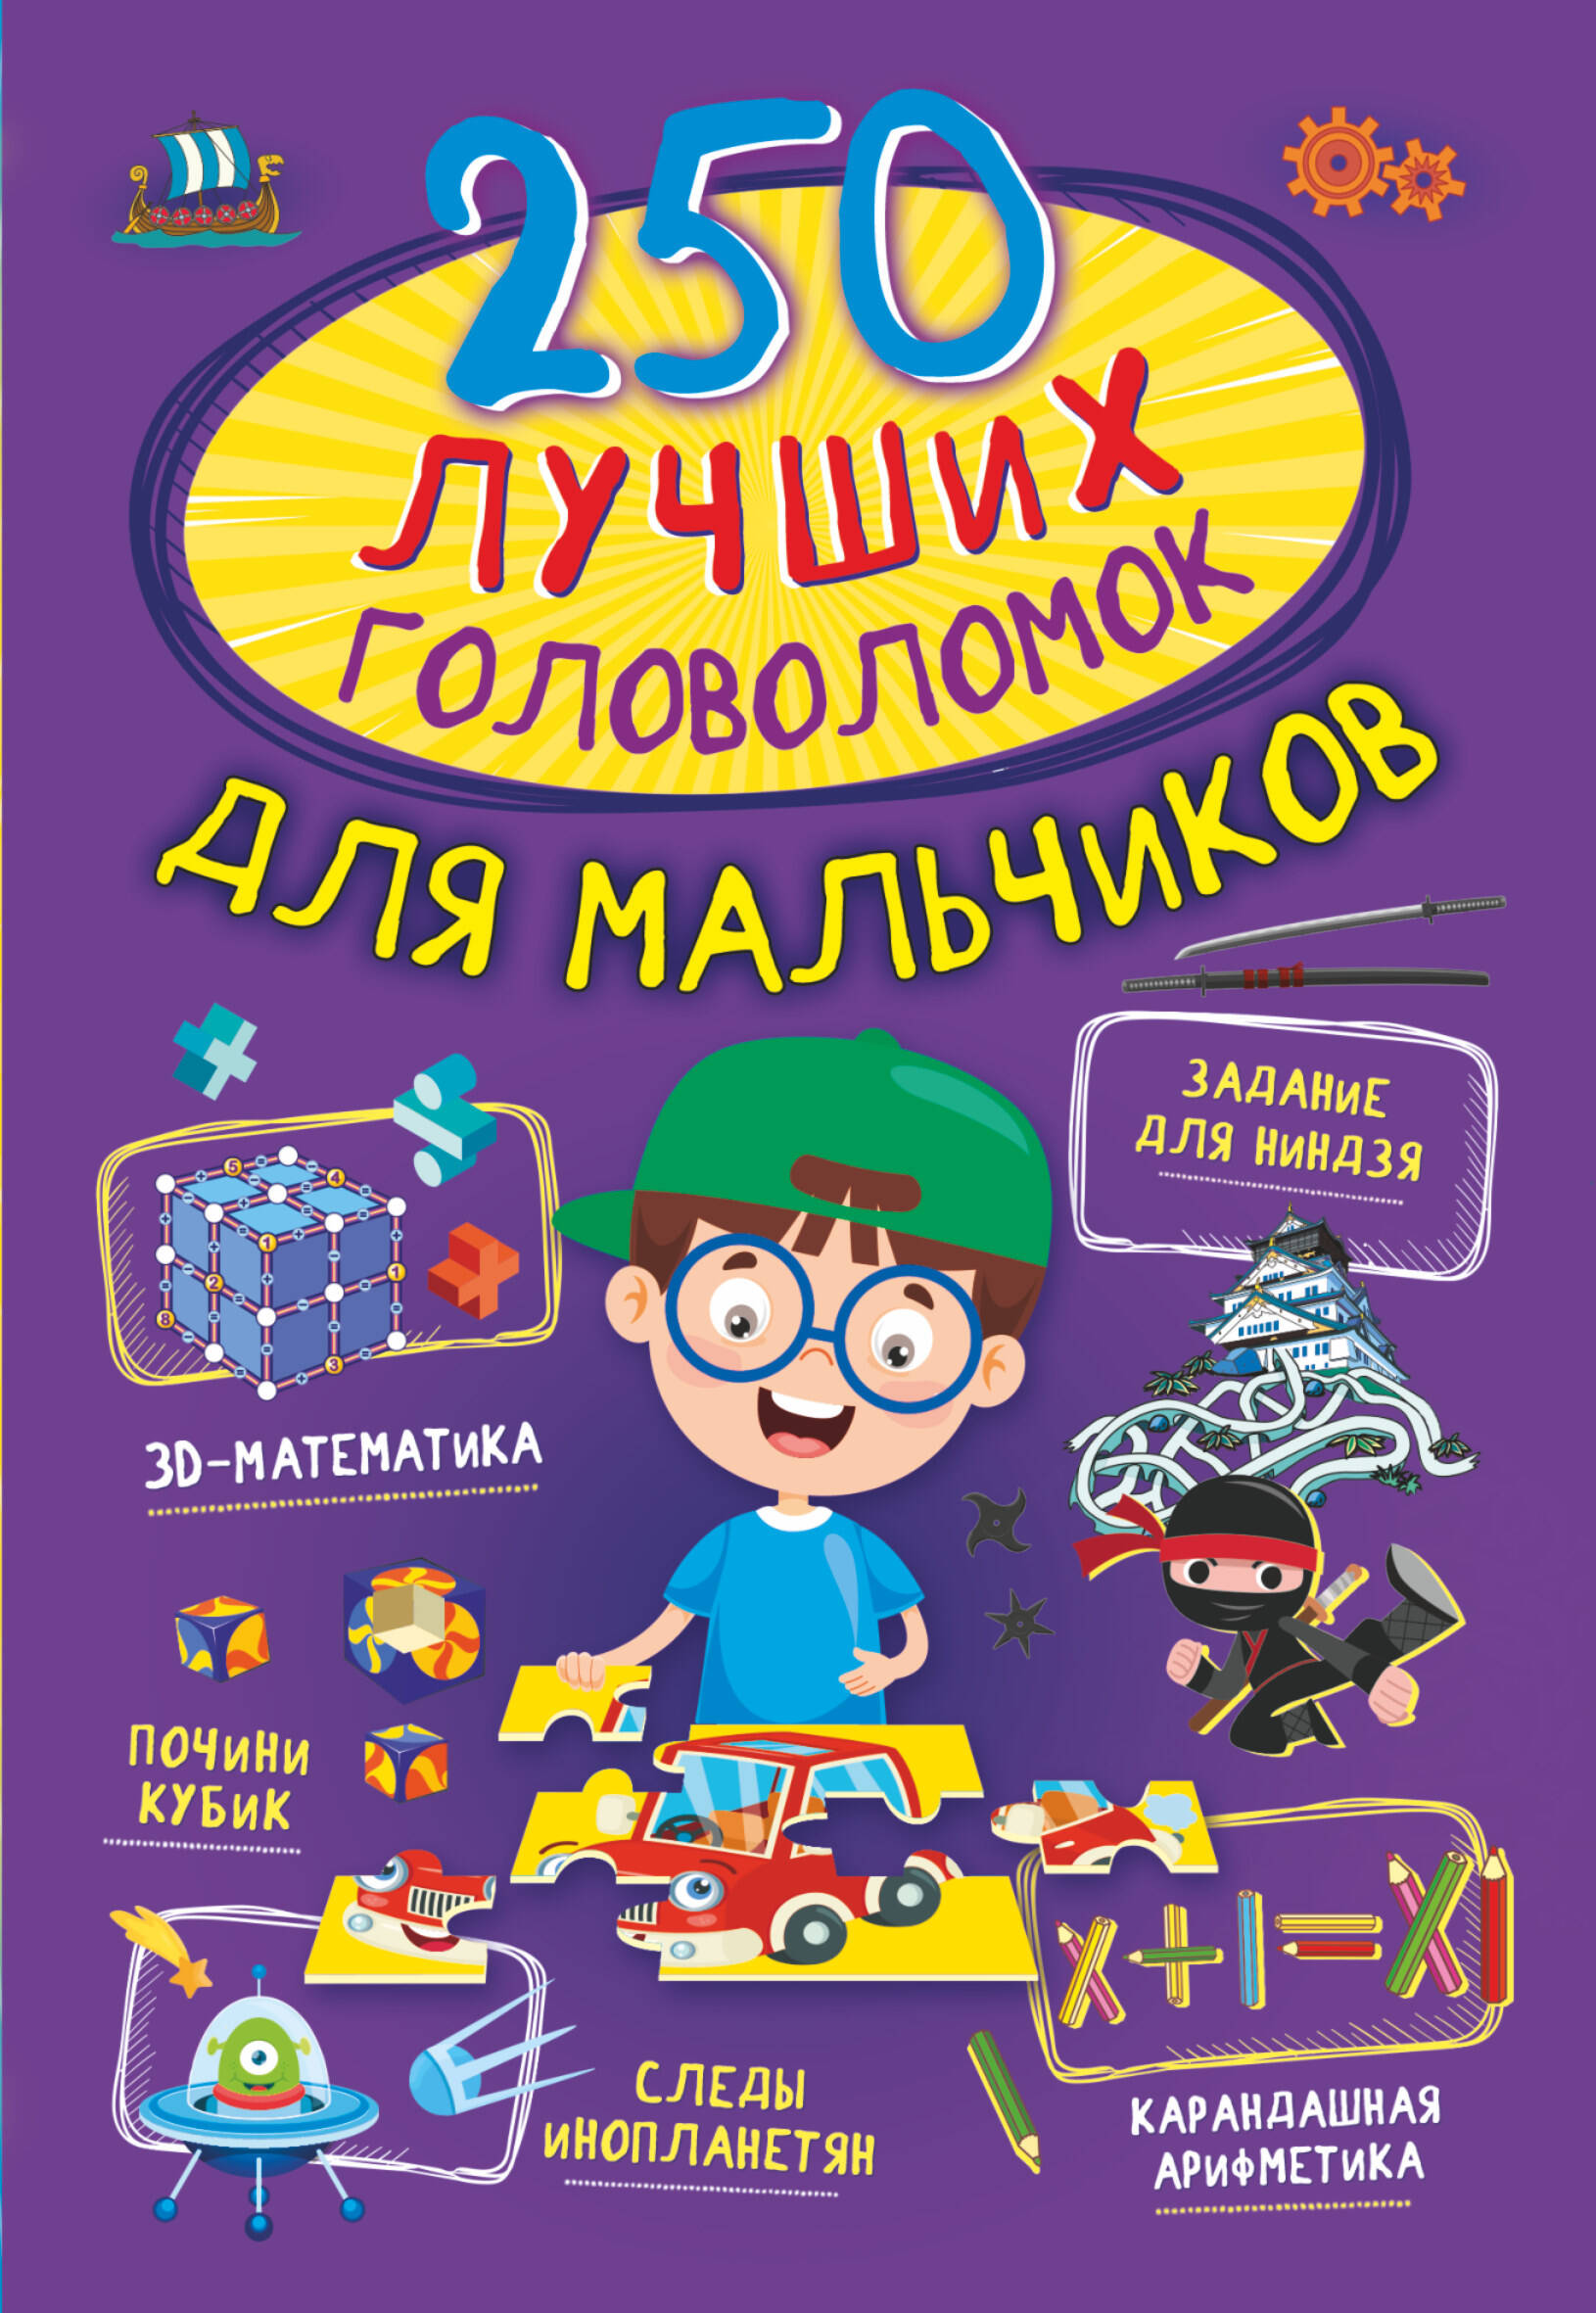 Прудник Анастасия Александровна - 250 лучших головоломок для мальчиков